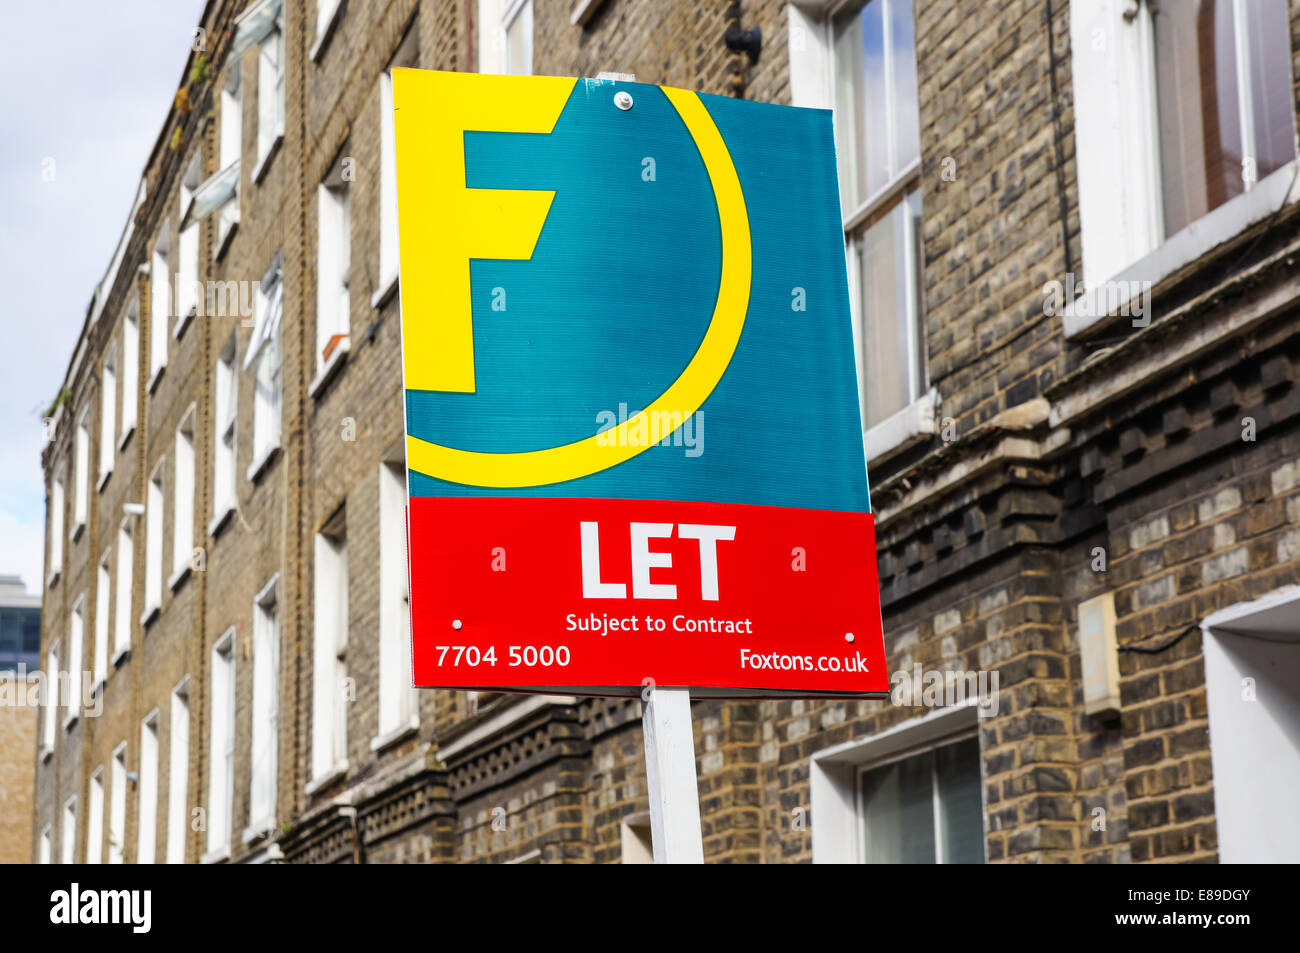 Foxtons Immobilien Zeichen zu lassen außerhalb Reihenhäuser in South London England Vereinigtes Königreich Großbritannien Stockfoto